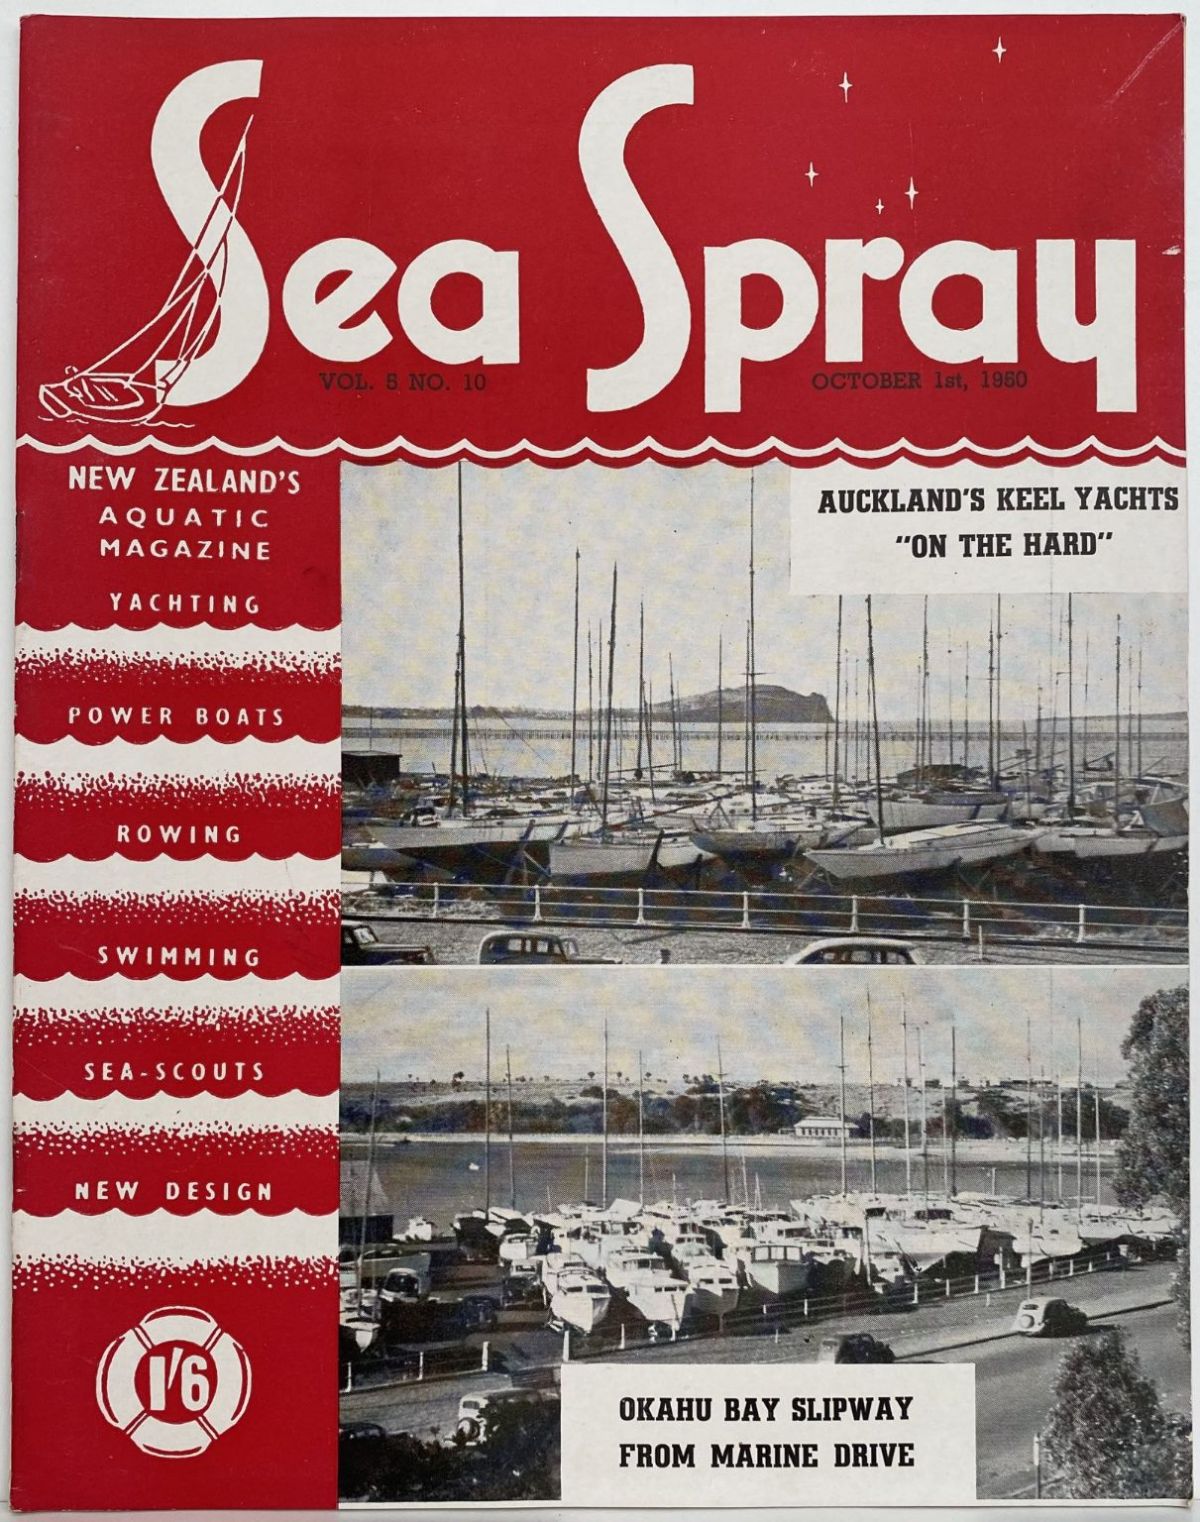 VINTAGE MAGAZINE: Sea Spray - Vol. 5, No. 10 - October 1950